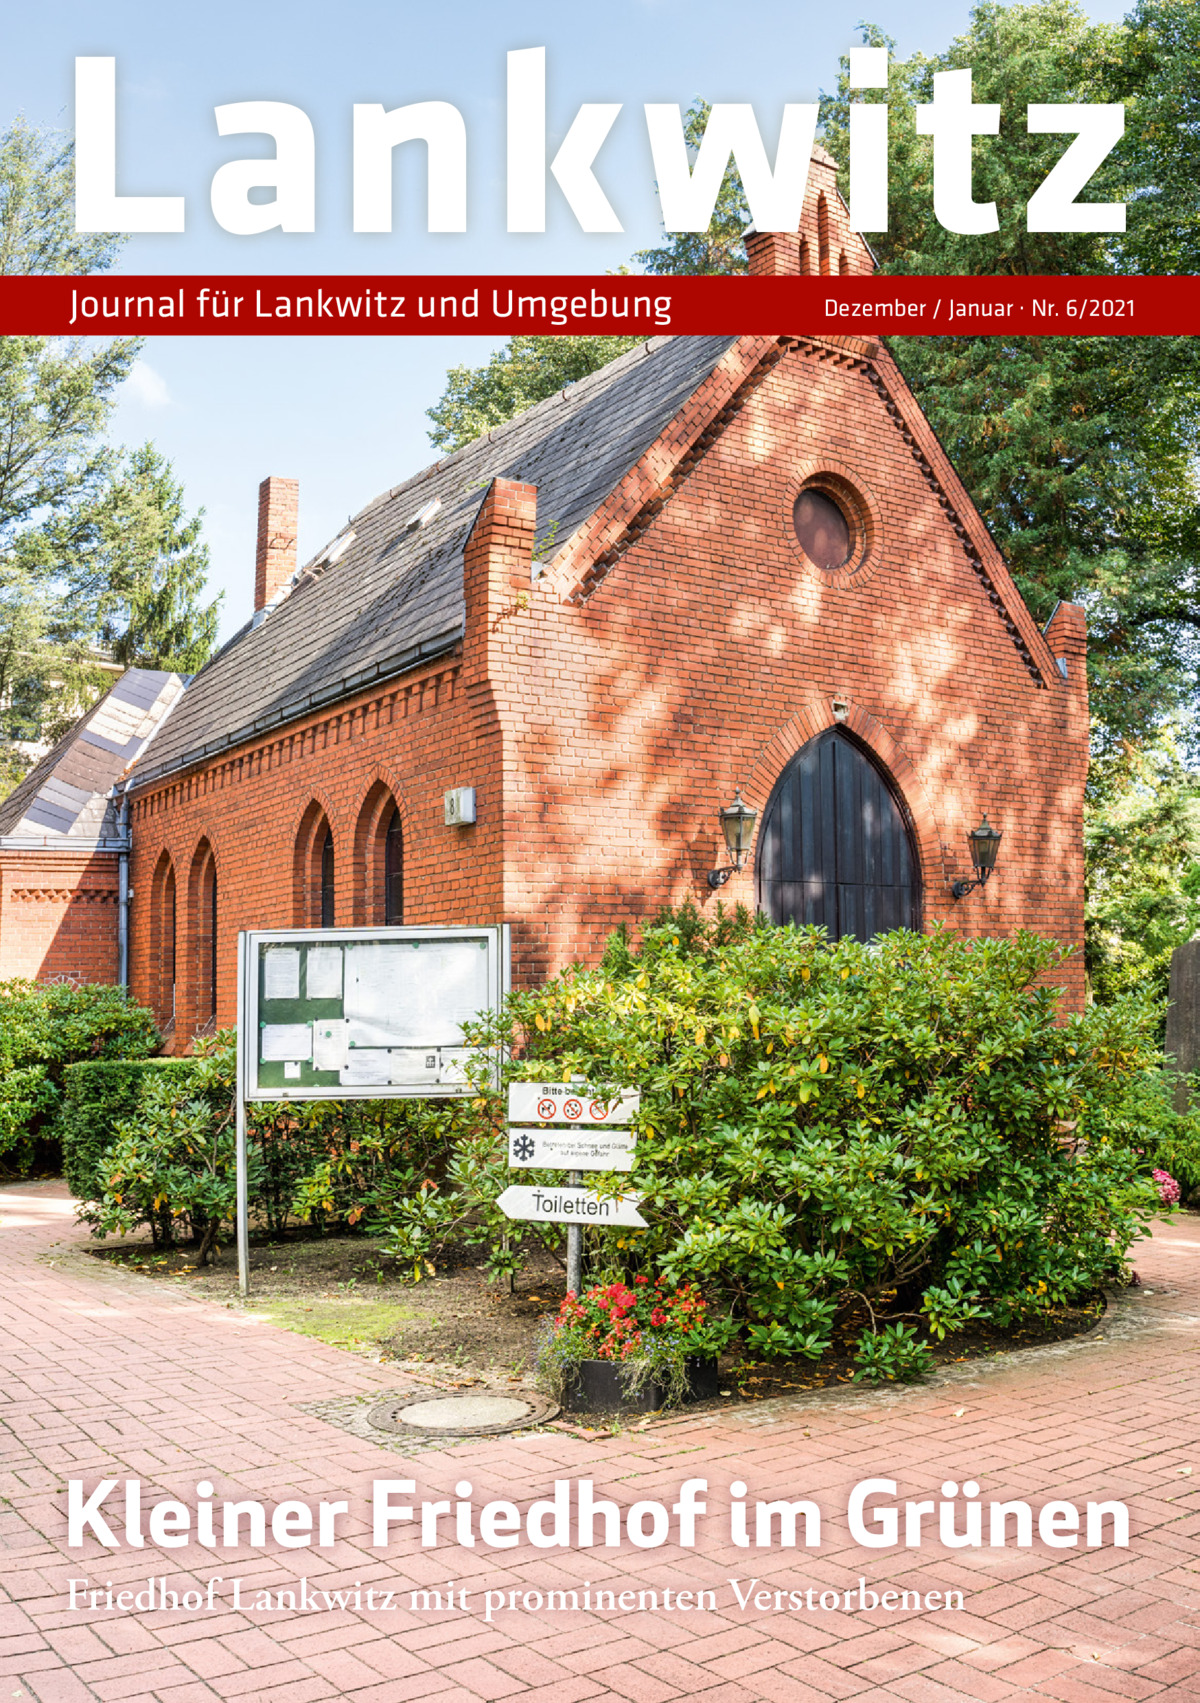 Lankwitz Journal für Lankwitz und Umgebung  Dezember / Januar · Nr. 6/2021  Kleiner Friedhof im Grünen Friedhof Lankwitz mit prominenten Verstorbenen